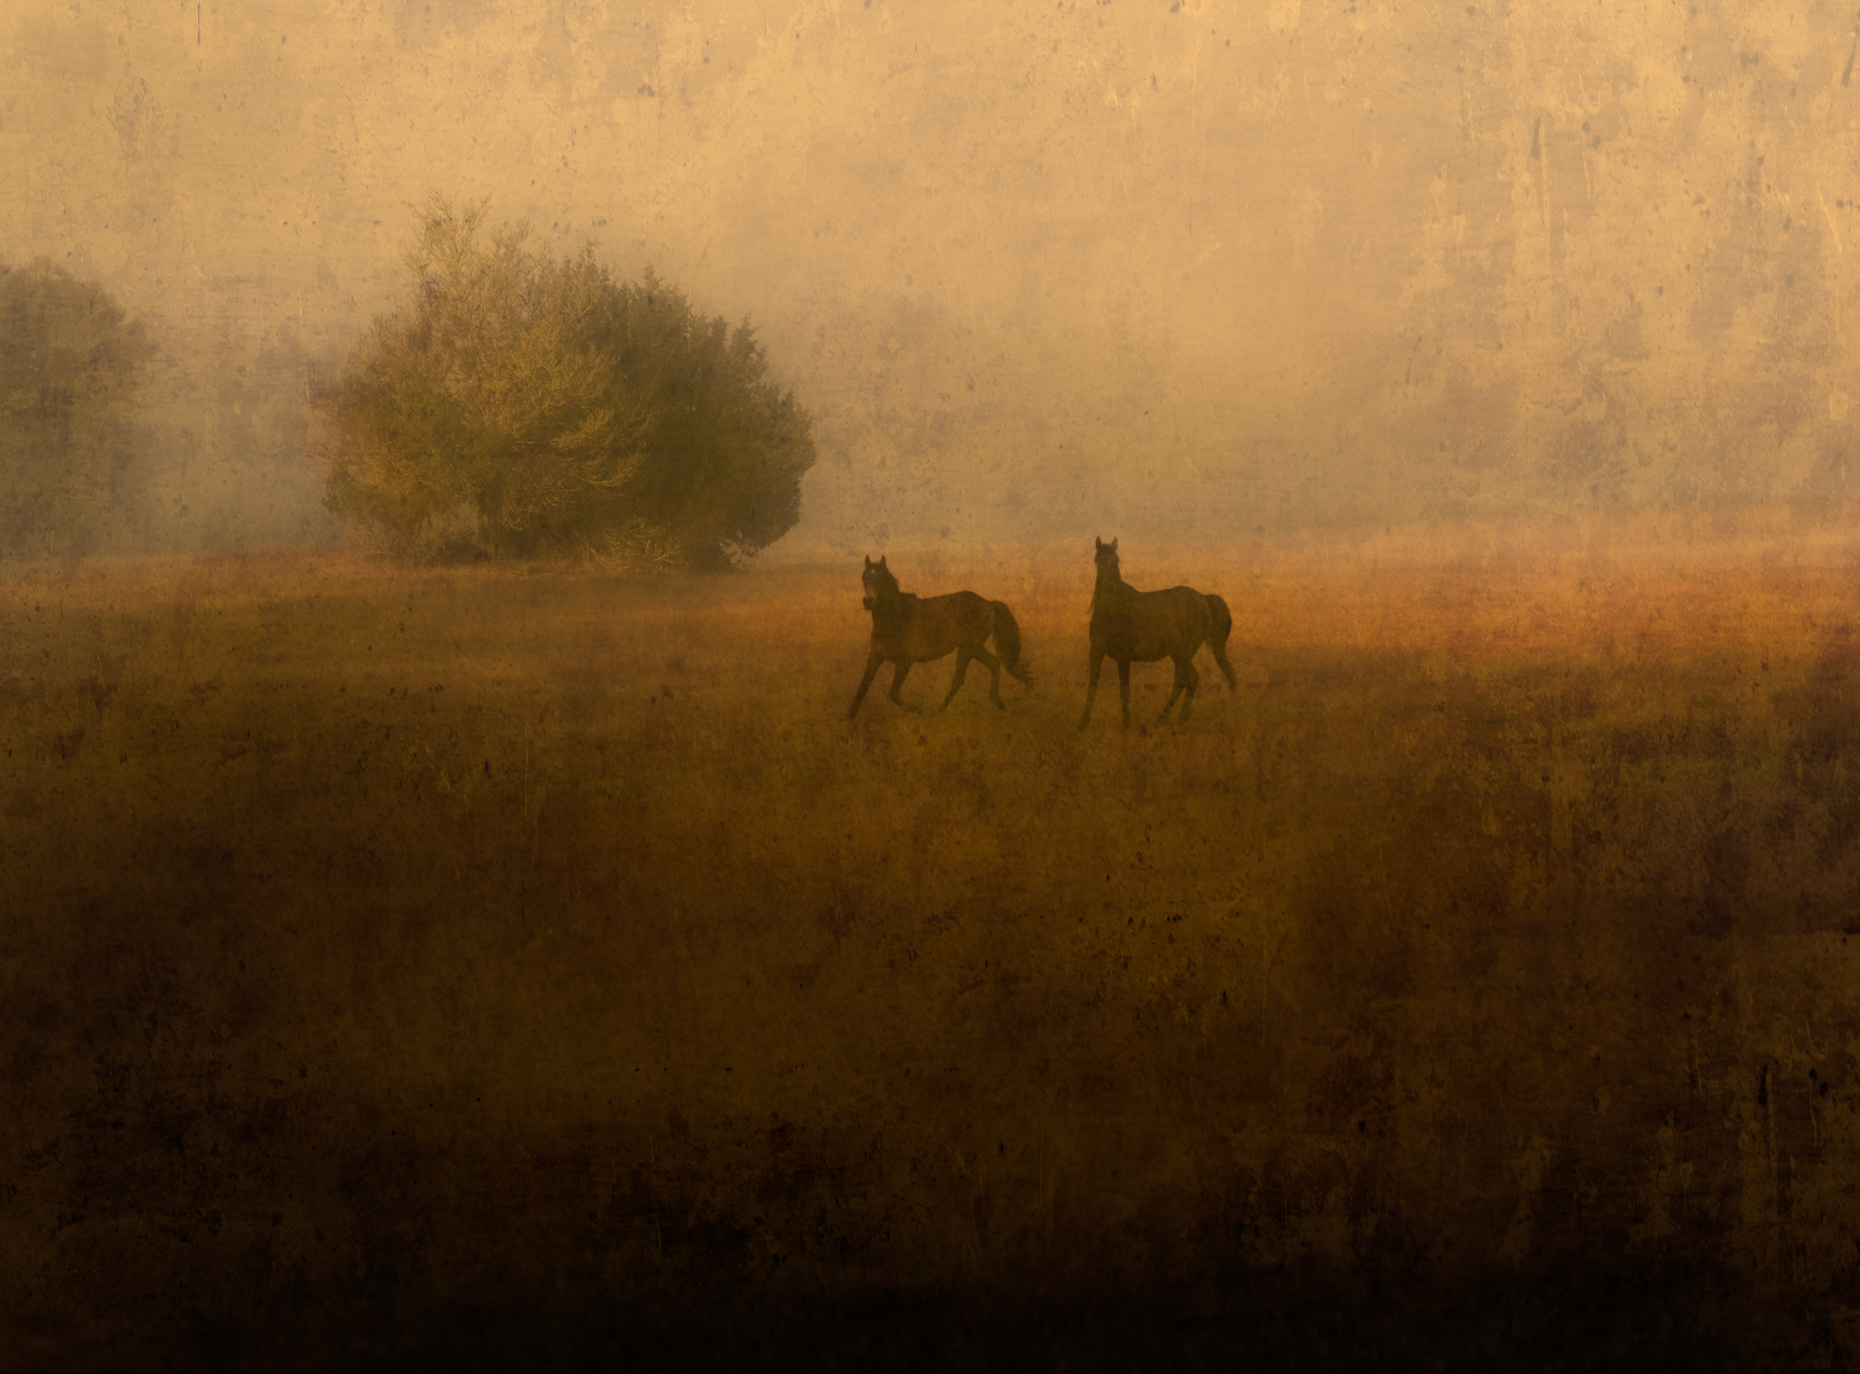 "Two Wild Horses", Cumberland Island, Georgia